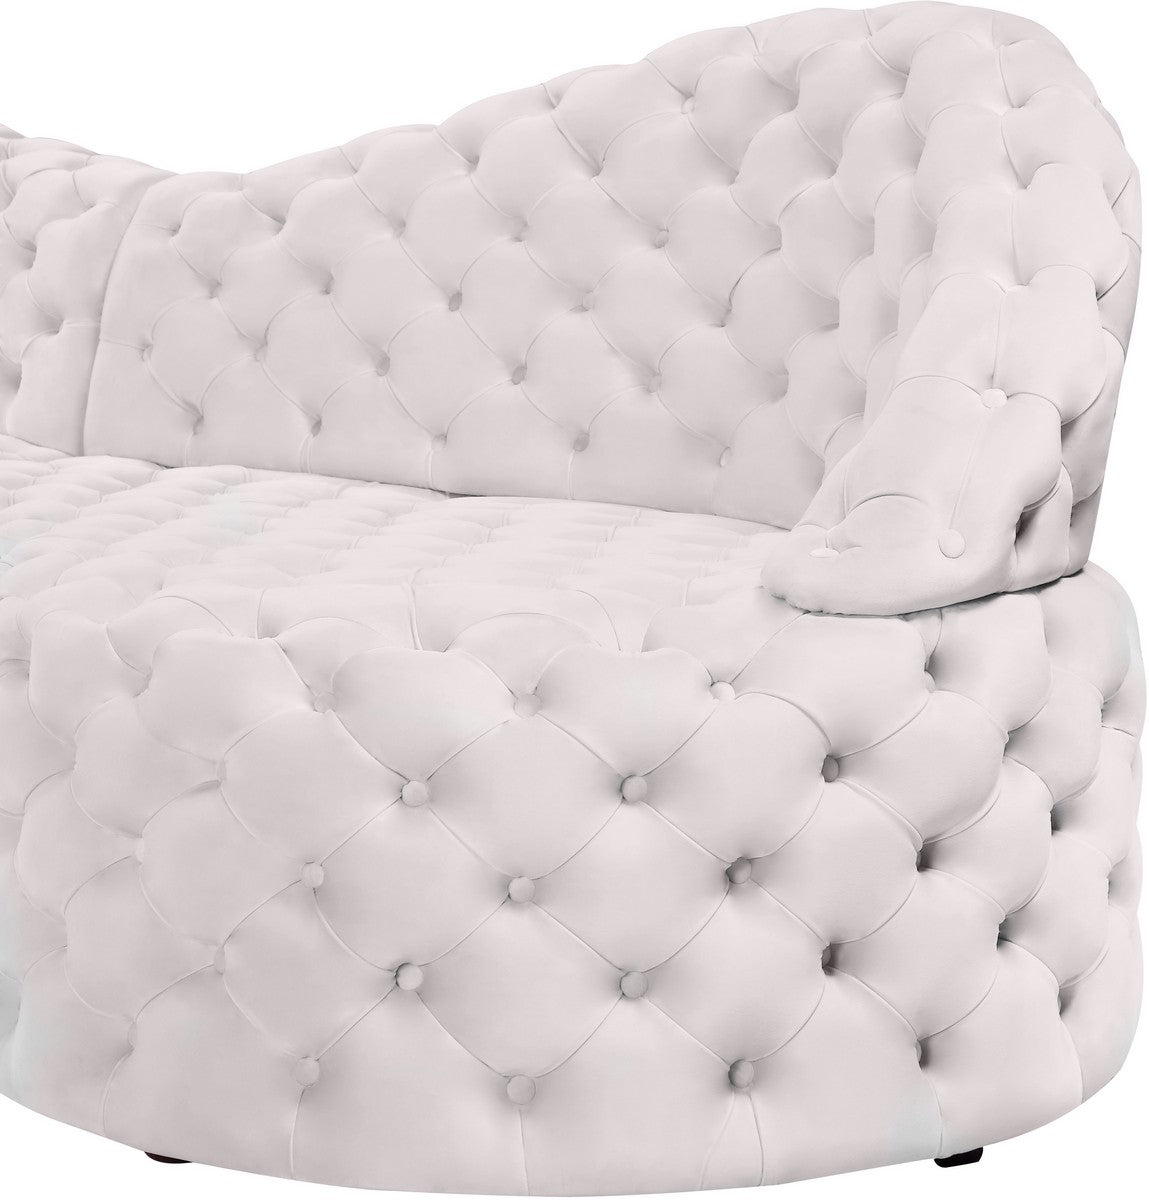 Meridian Furniture Royal Cream Velvet 2pc. Sectional